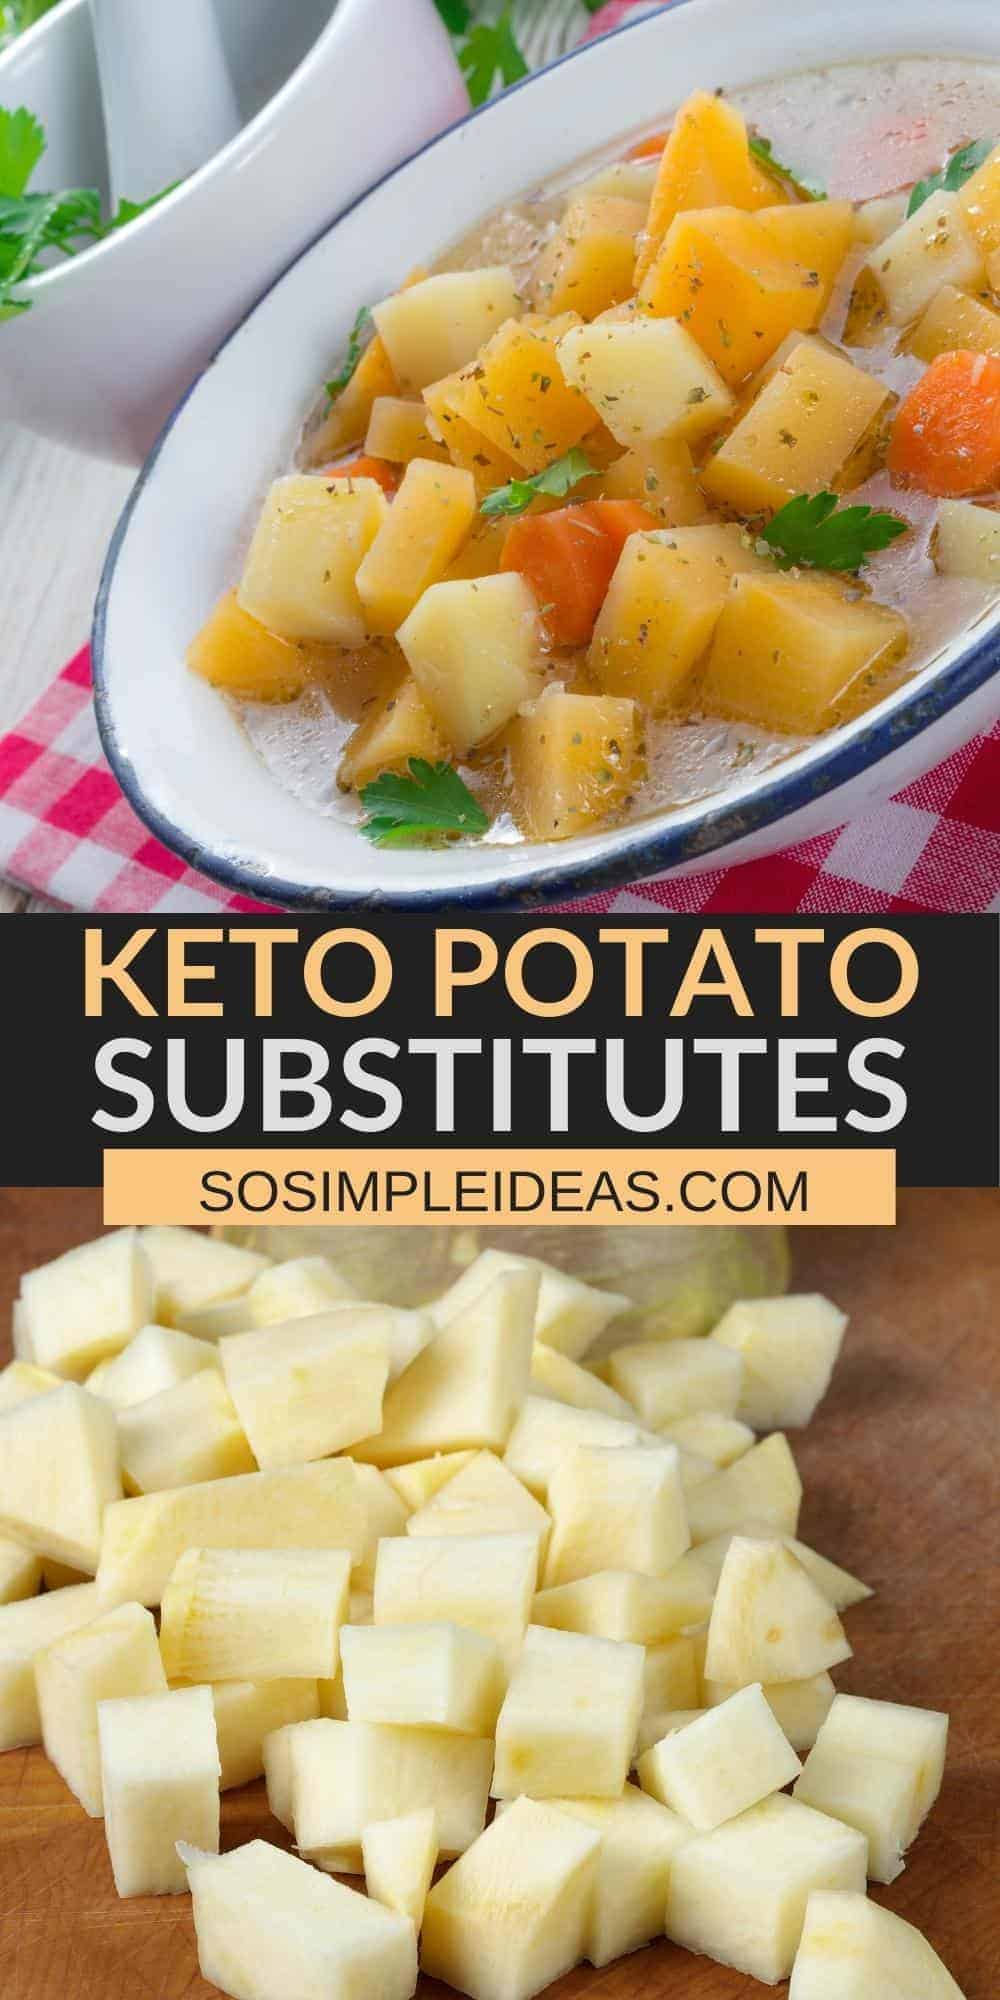 keto potato substitutes pinterest image.